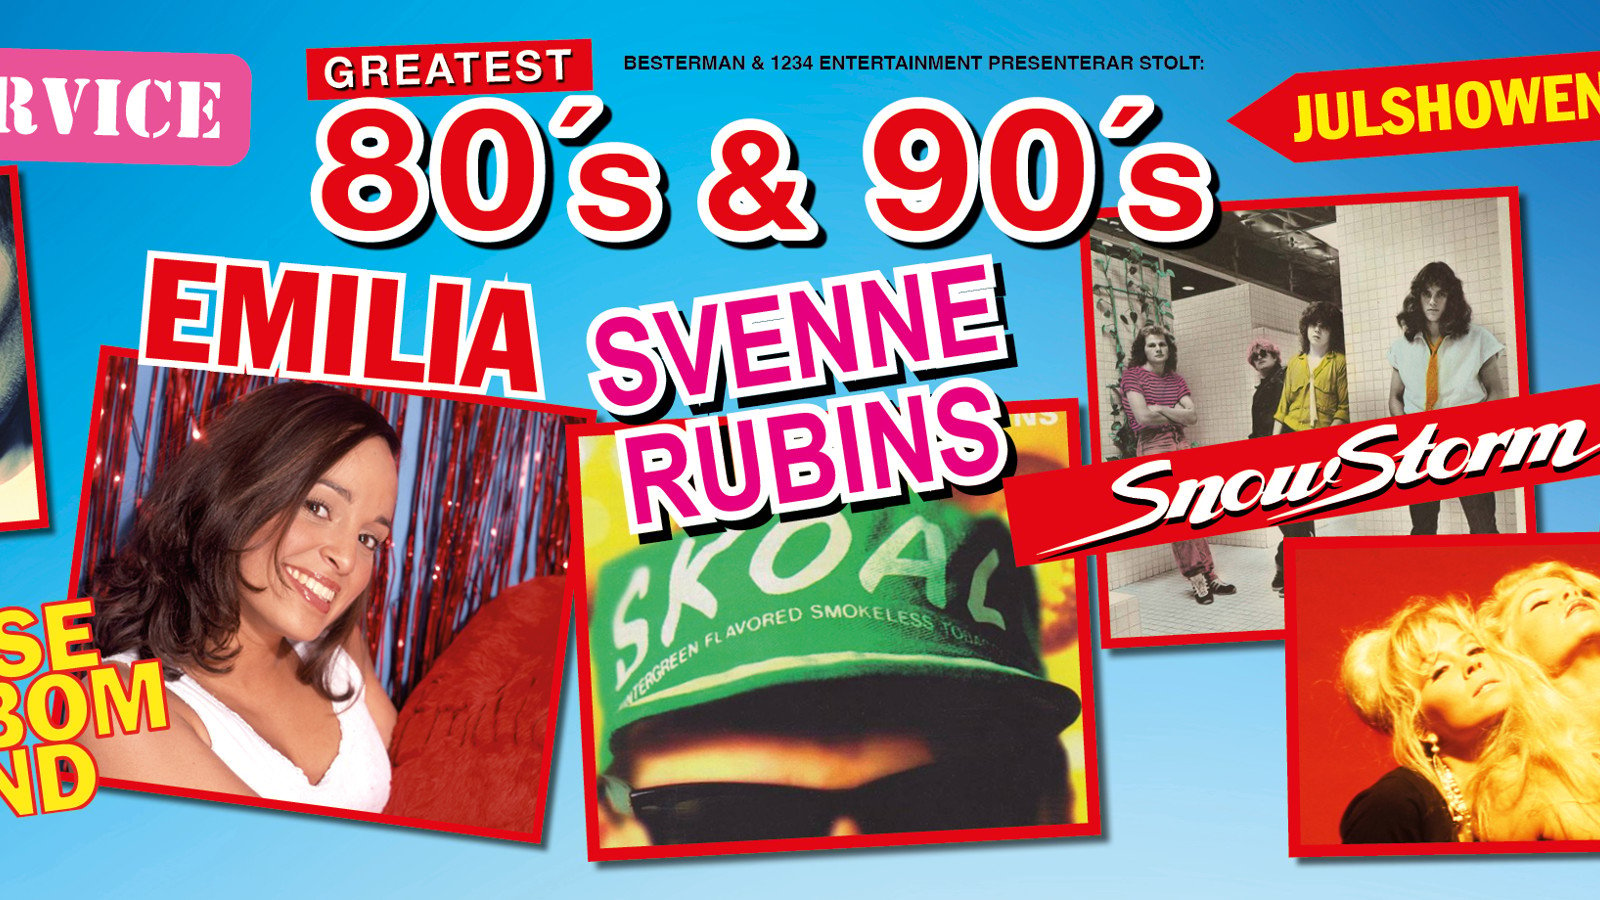 GREATEST 80s & 90s